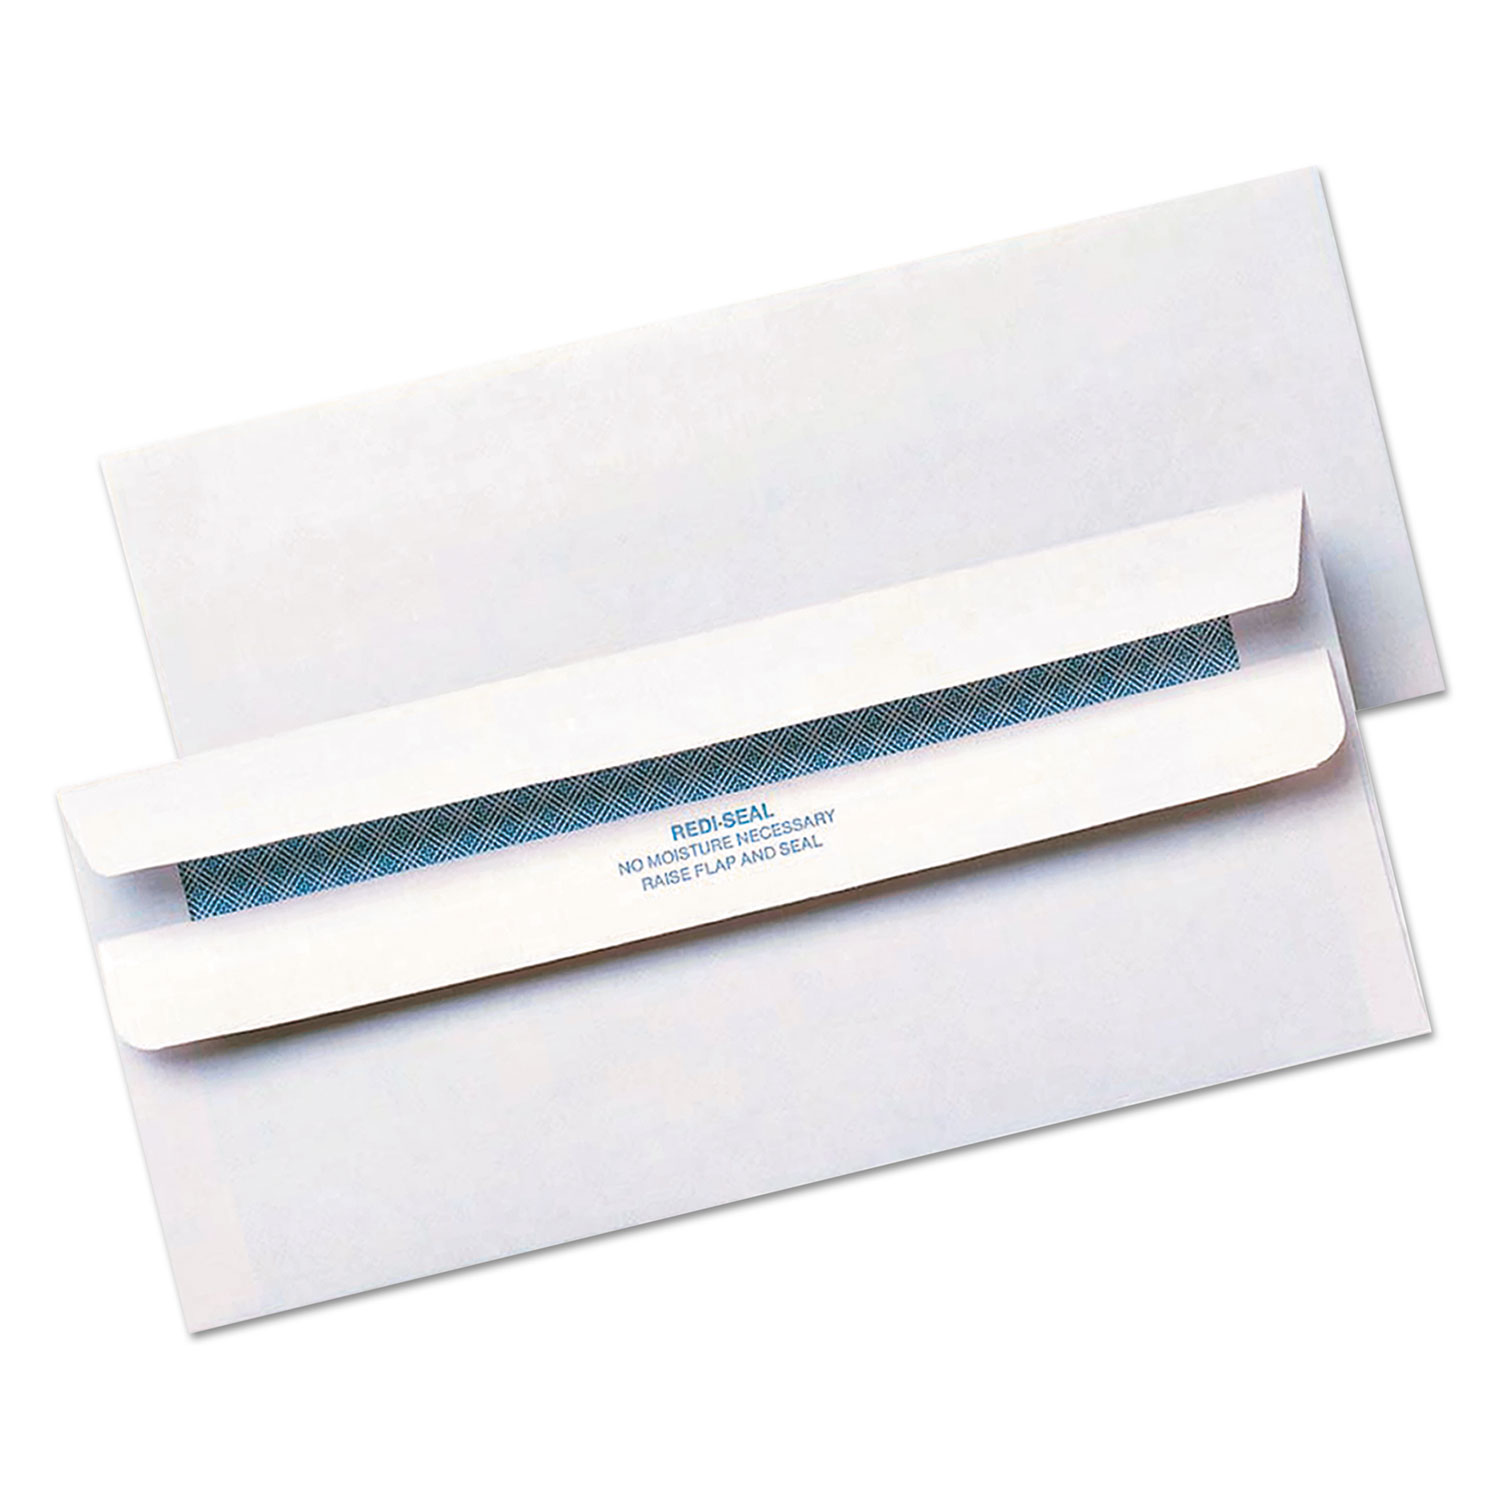 Redi Seal Security Tinted Envelope, #10, 4 1/8 x 9 1/2, White, 500/Box